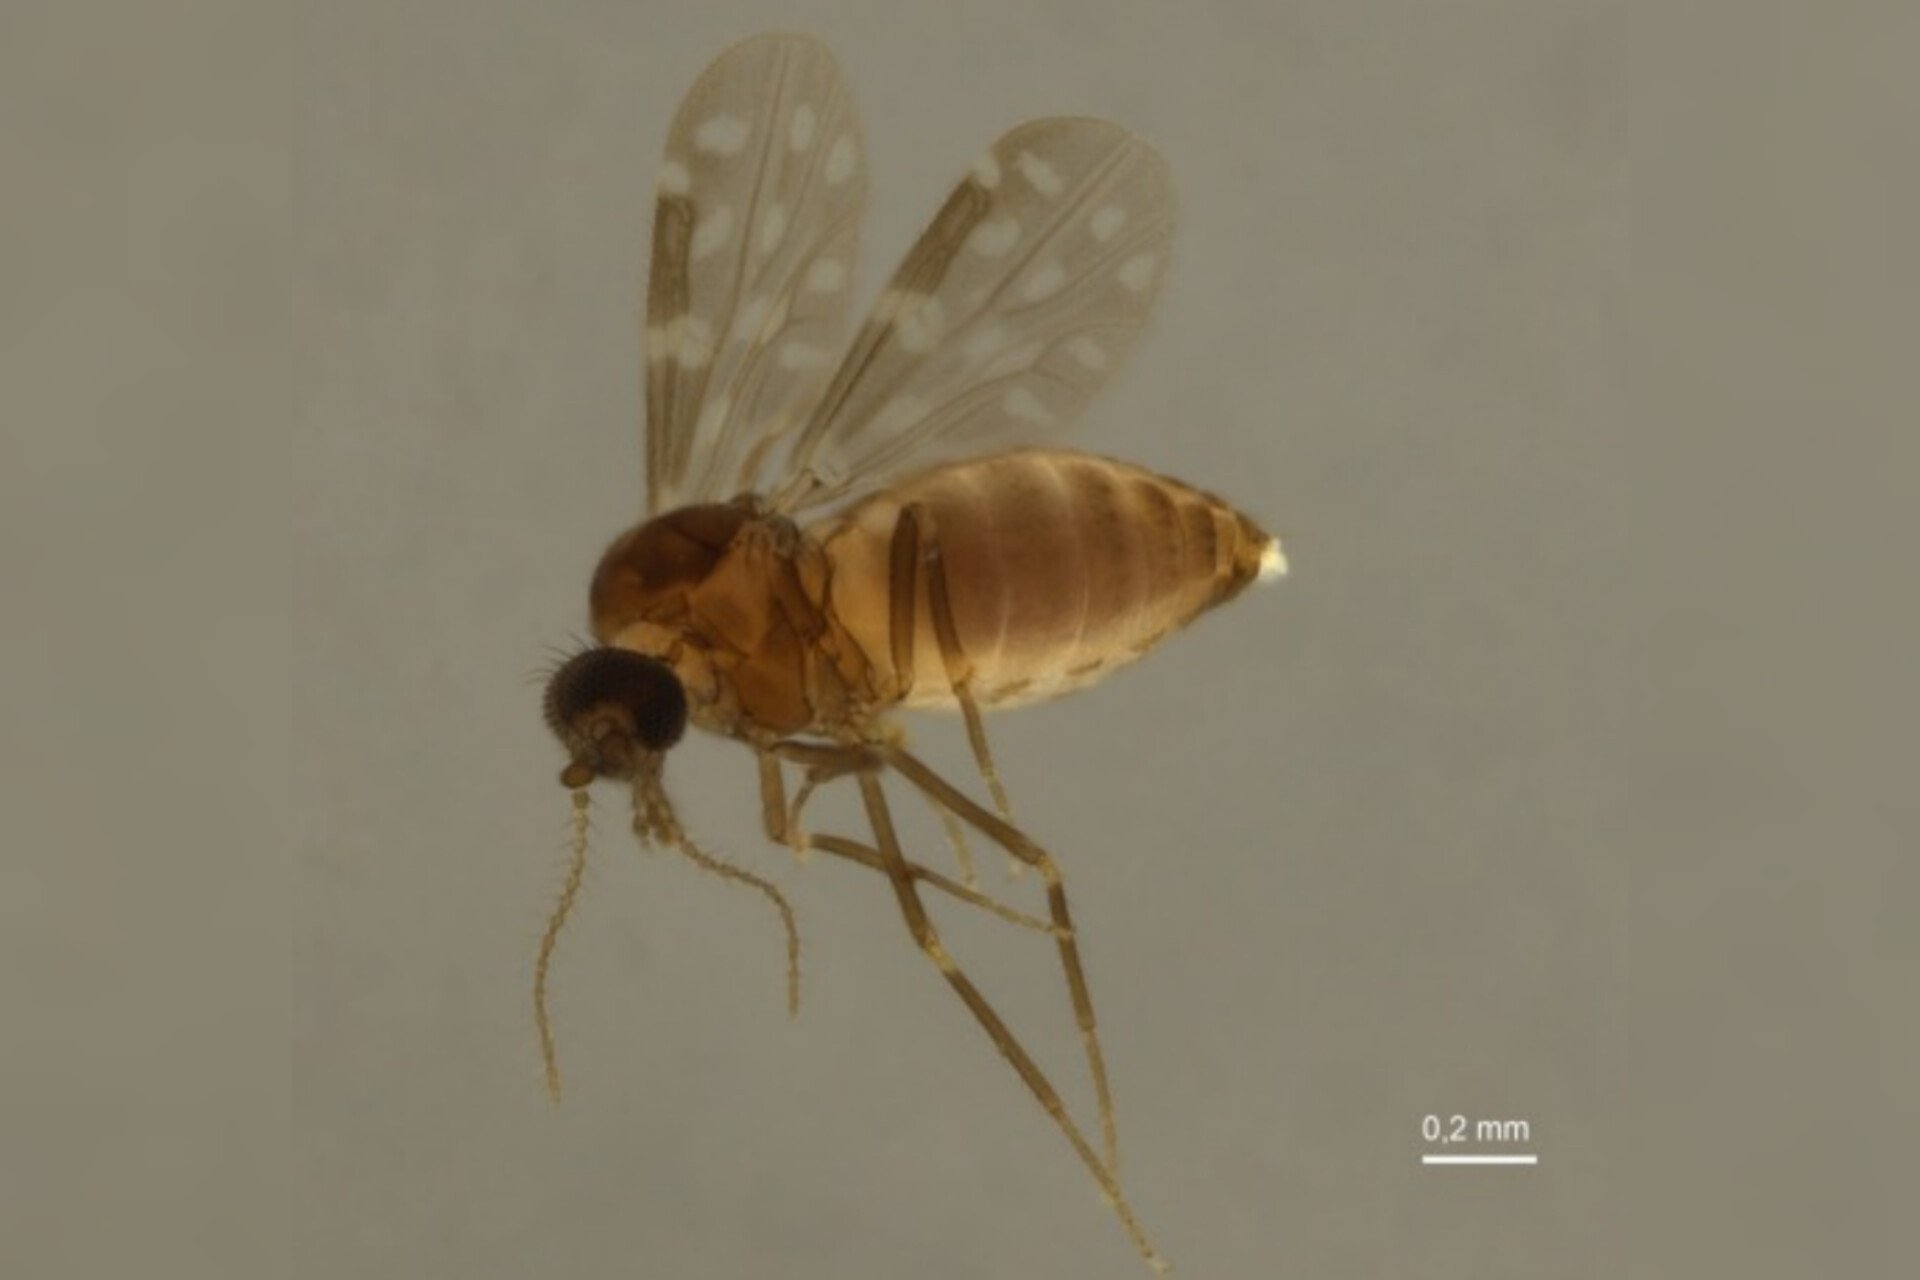 Imagem de microscópio retrata o mosquito Culicoides paraenses, transmissor da febre oropouche - Metrópoles